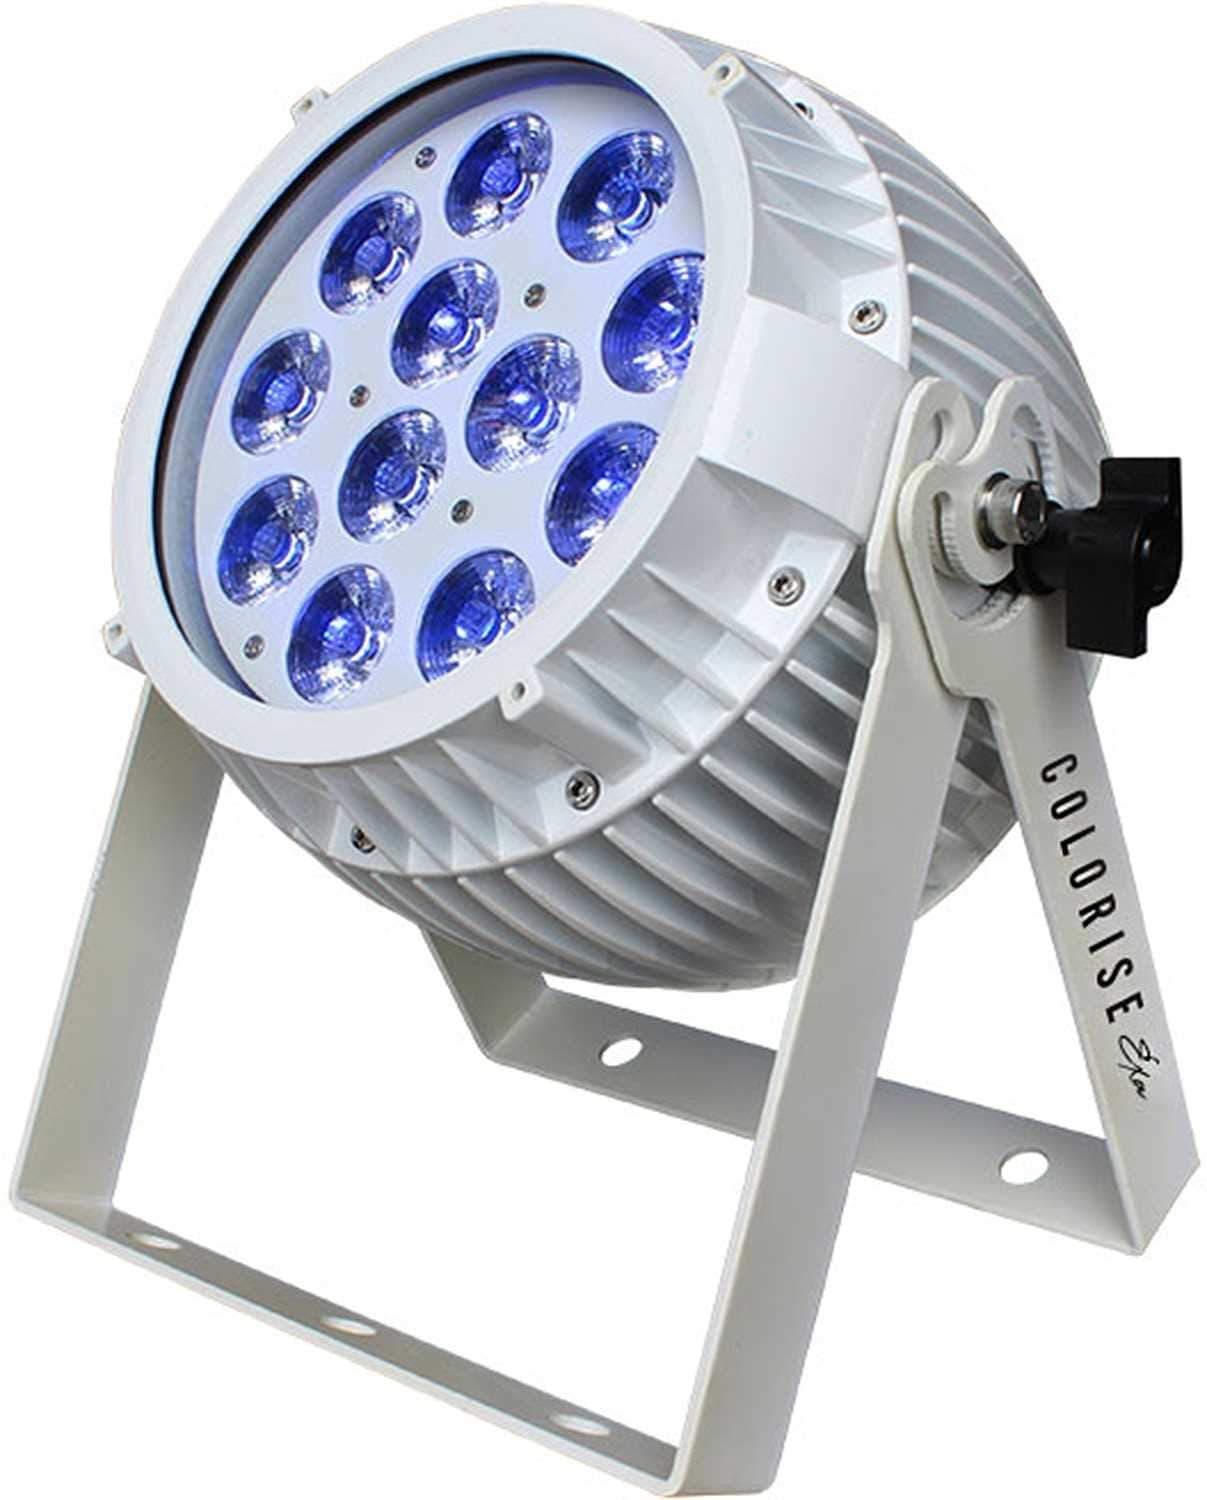 Blizzard Colorise EXA 12x15-Watt RGBAW Plus UV White LED Wash Light - ProSound and Stage Lighting